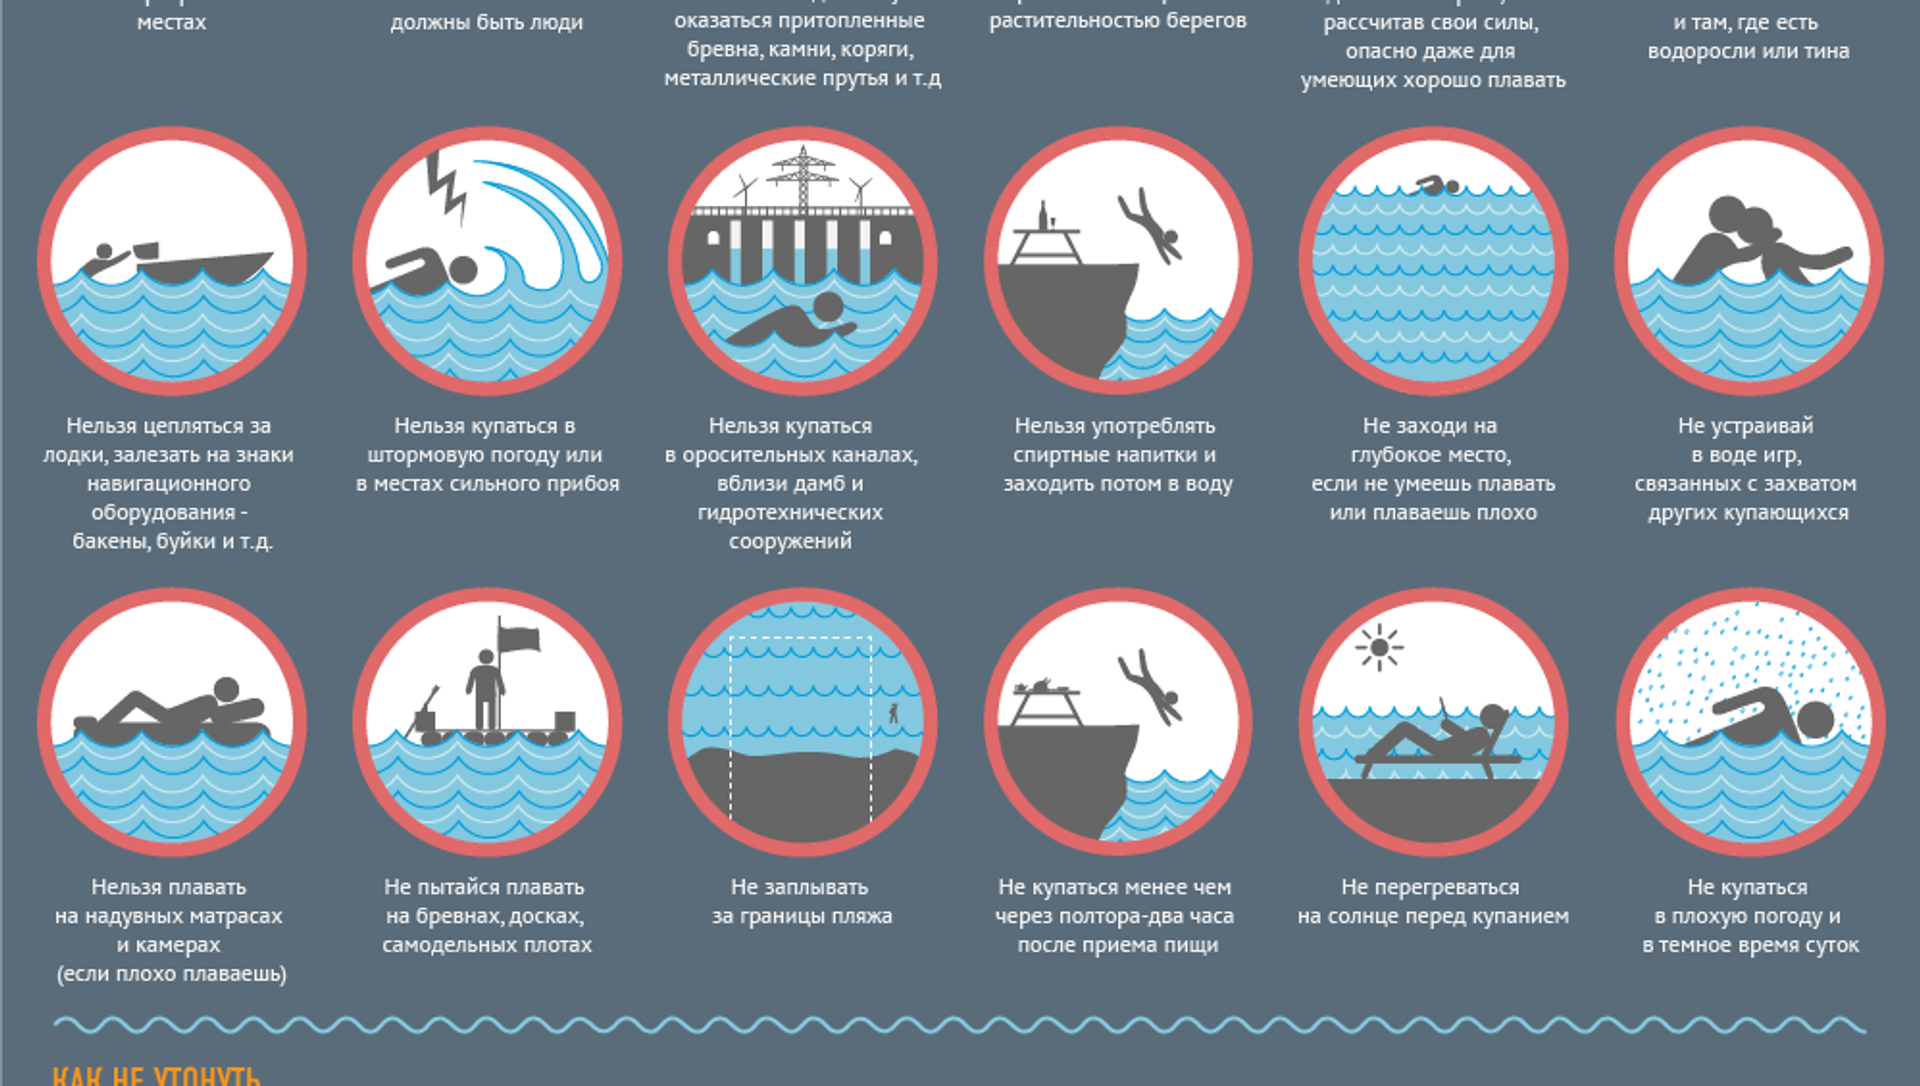 Безопасность 22 рф. Правила поведения на воде. Инфографика безопасность на воде. Безопасное поведение на воде инфографика. Значки правил безопасности у вода.